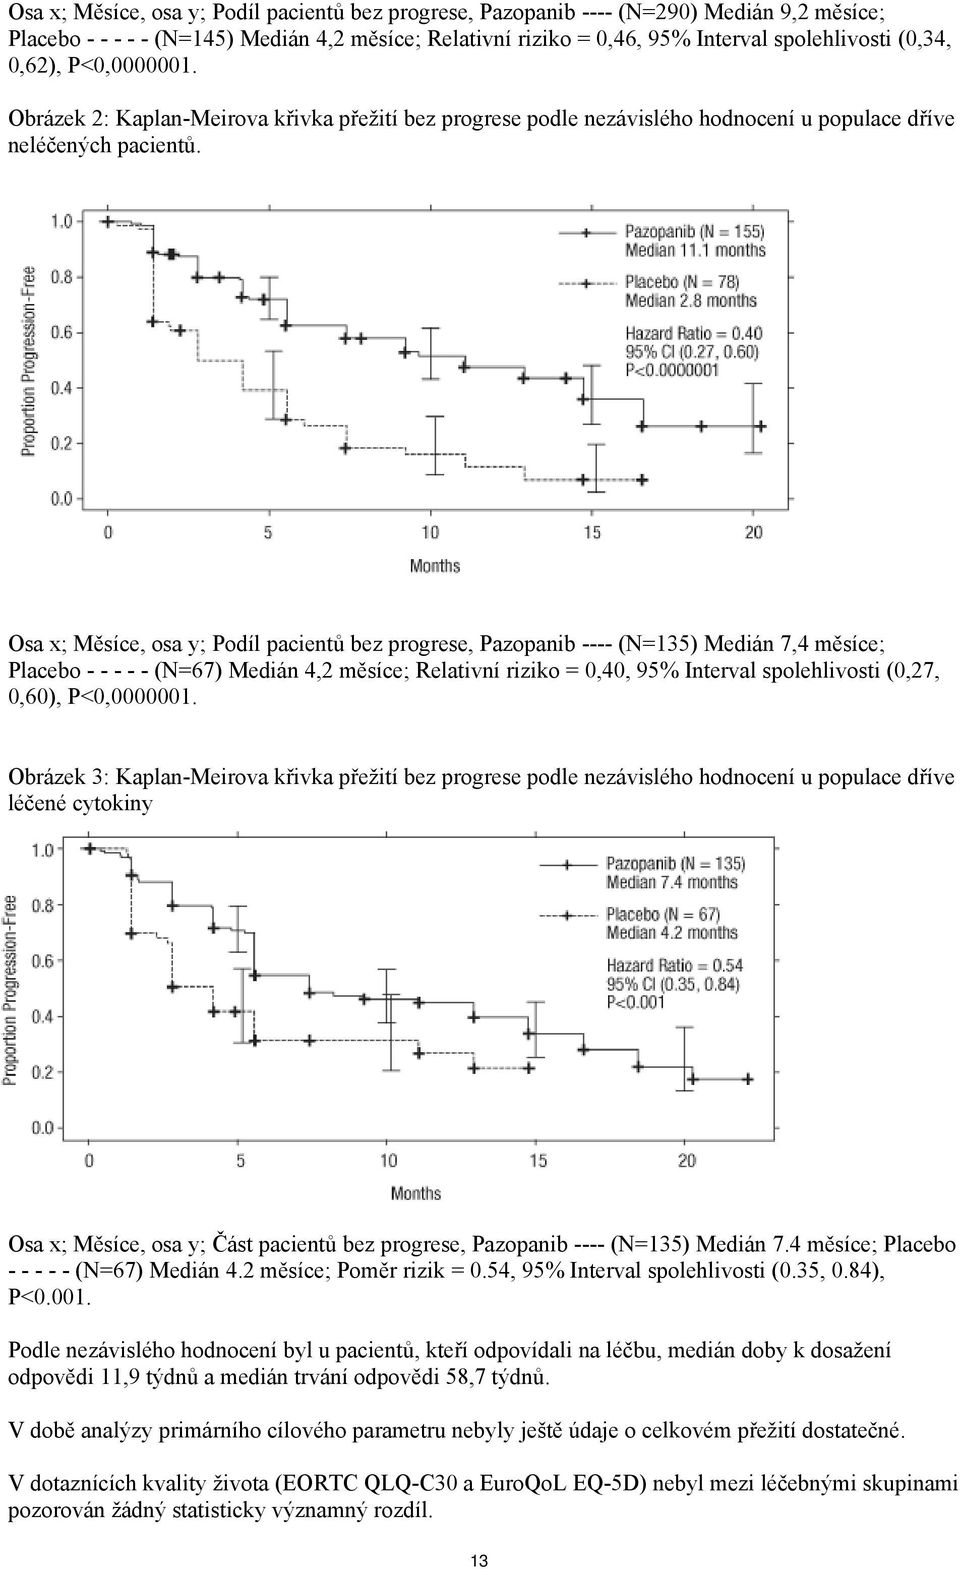 Osa x; Měsíce, osa y; Podíl pacientů bez progrese, Pazopanib ---- (N=135) Medián 7,4 měsíce; Placebo - - - - - (N=67) Medián 4,2 měsíce; Relativní riziko = 0,40, 95% Interval spolehlivosti (0,27,